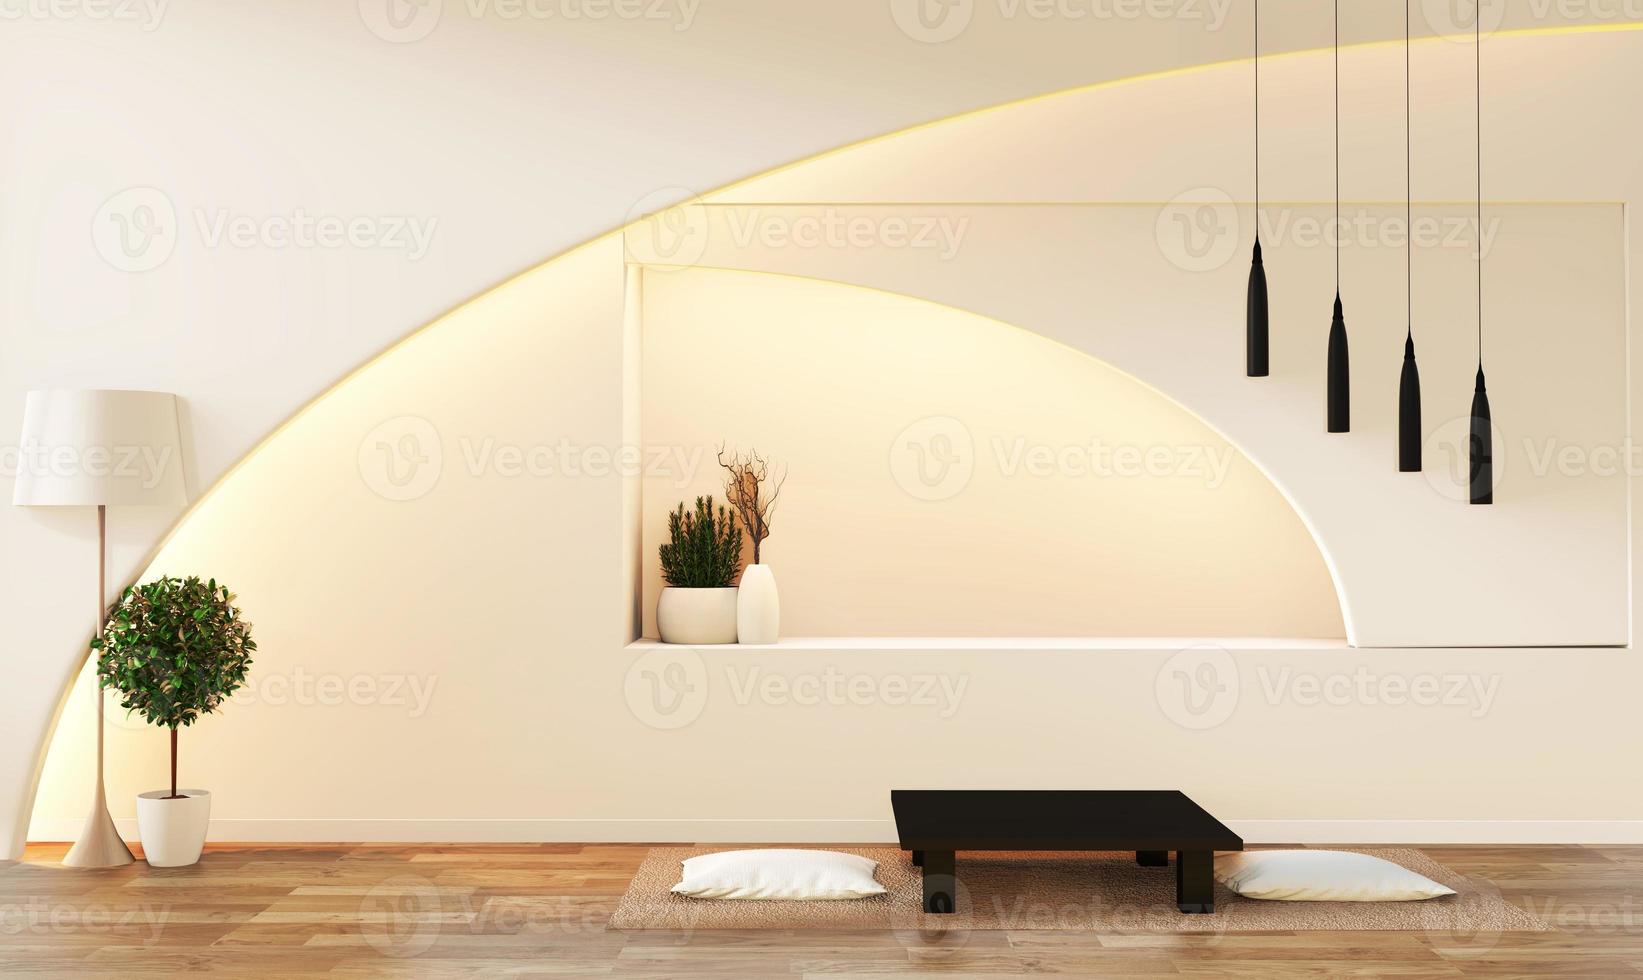 soggiorno bianco moderno in stile zen. soggiorno tranquillo e sereno. decorazione con oggetto orientale e luce nascosta.3d rendering foto